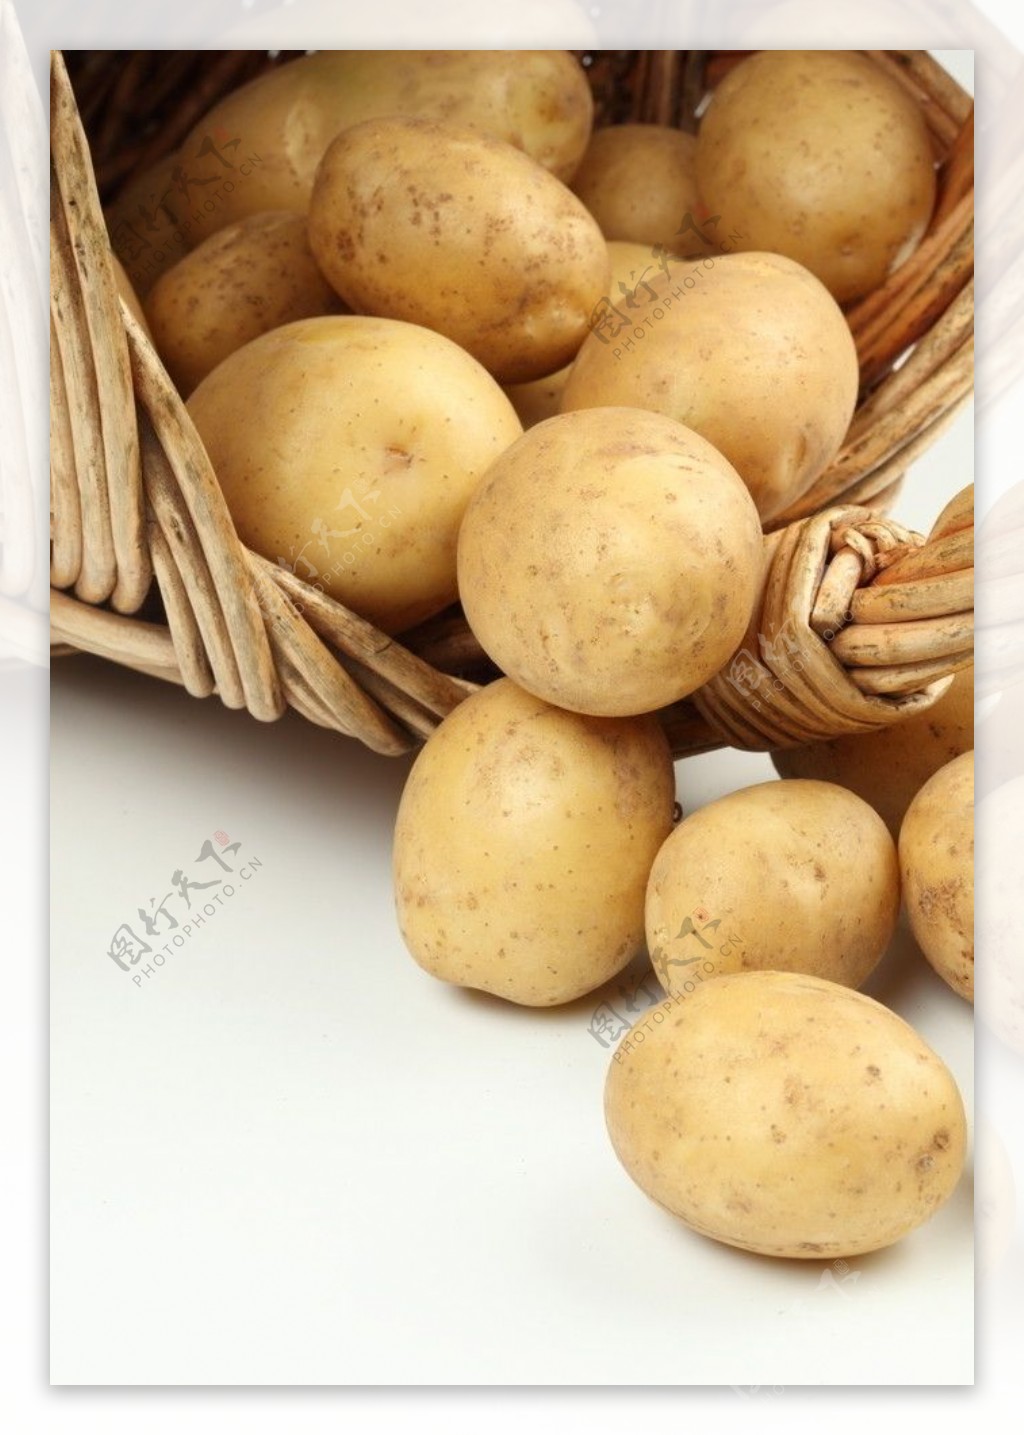 土豆马铃薯图片